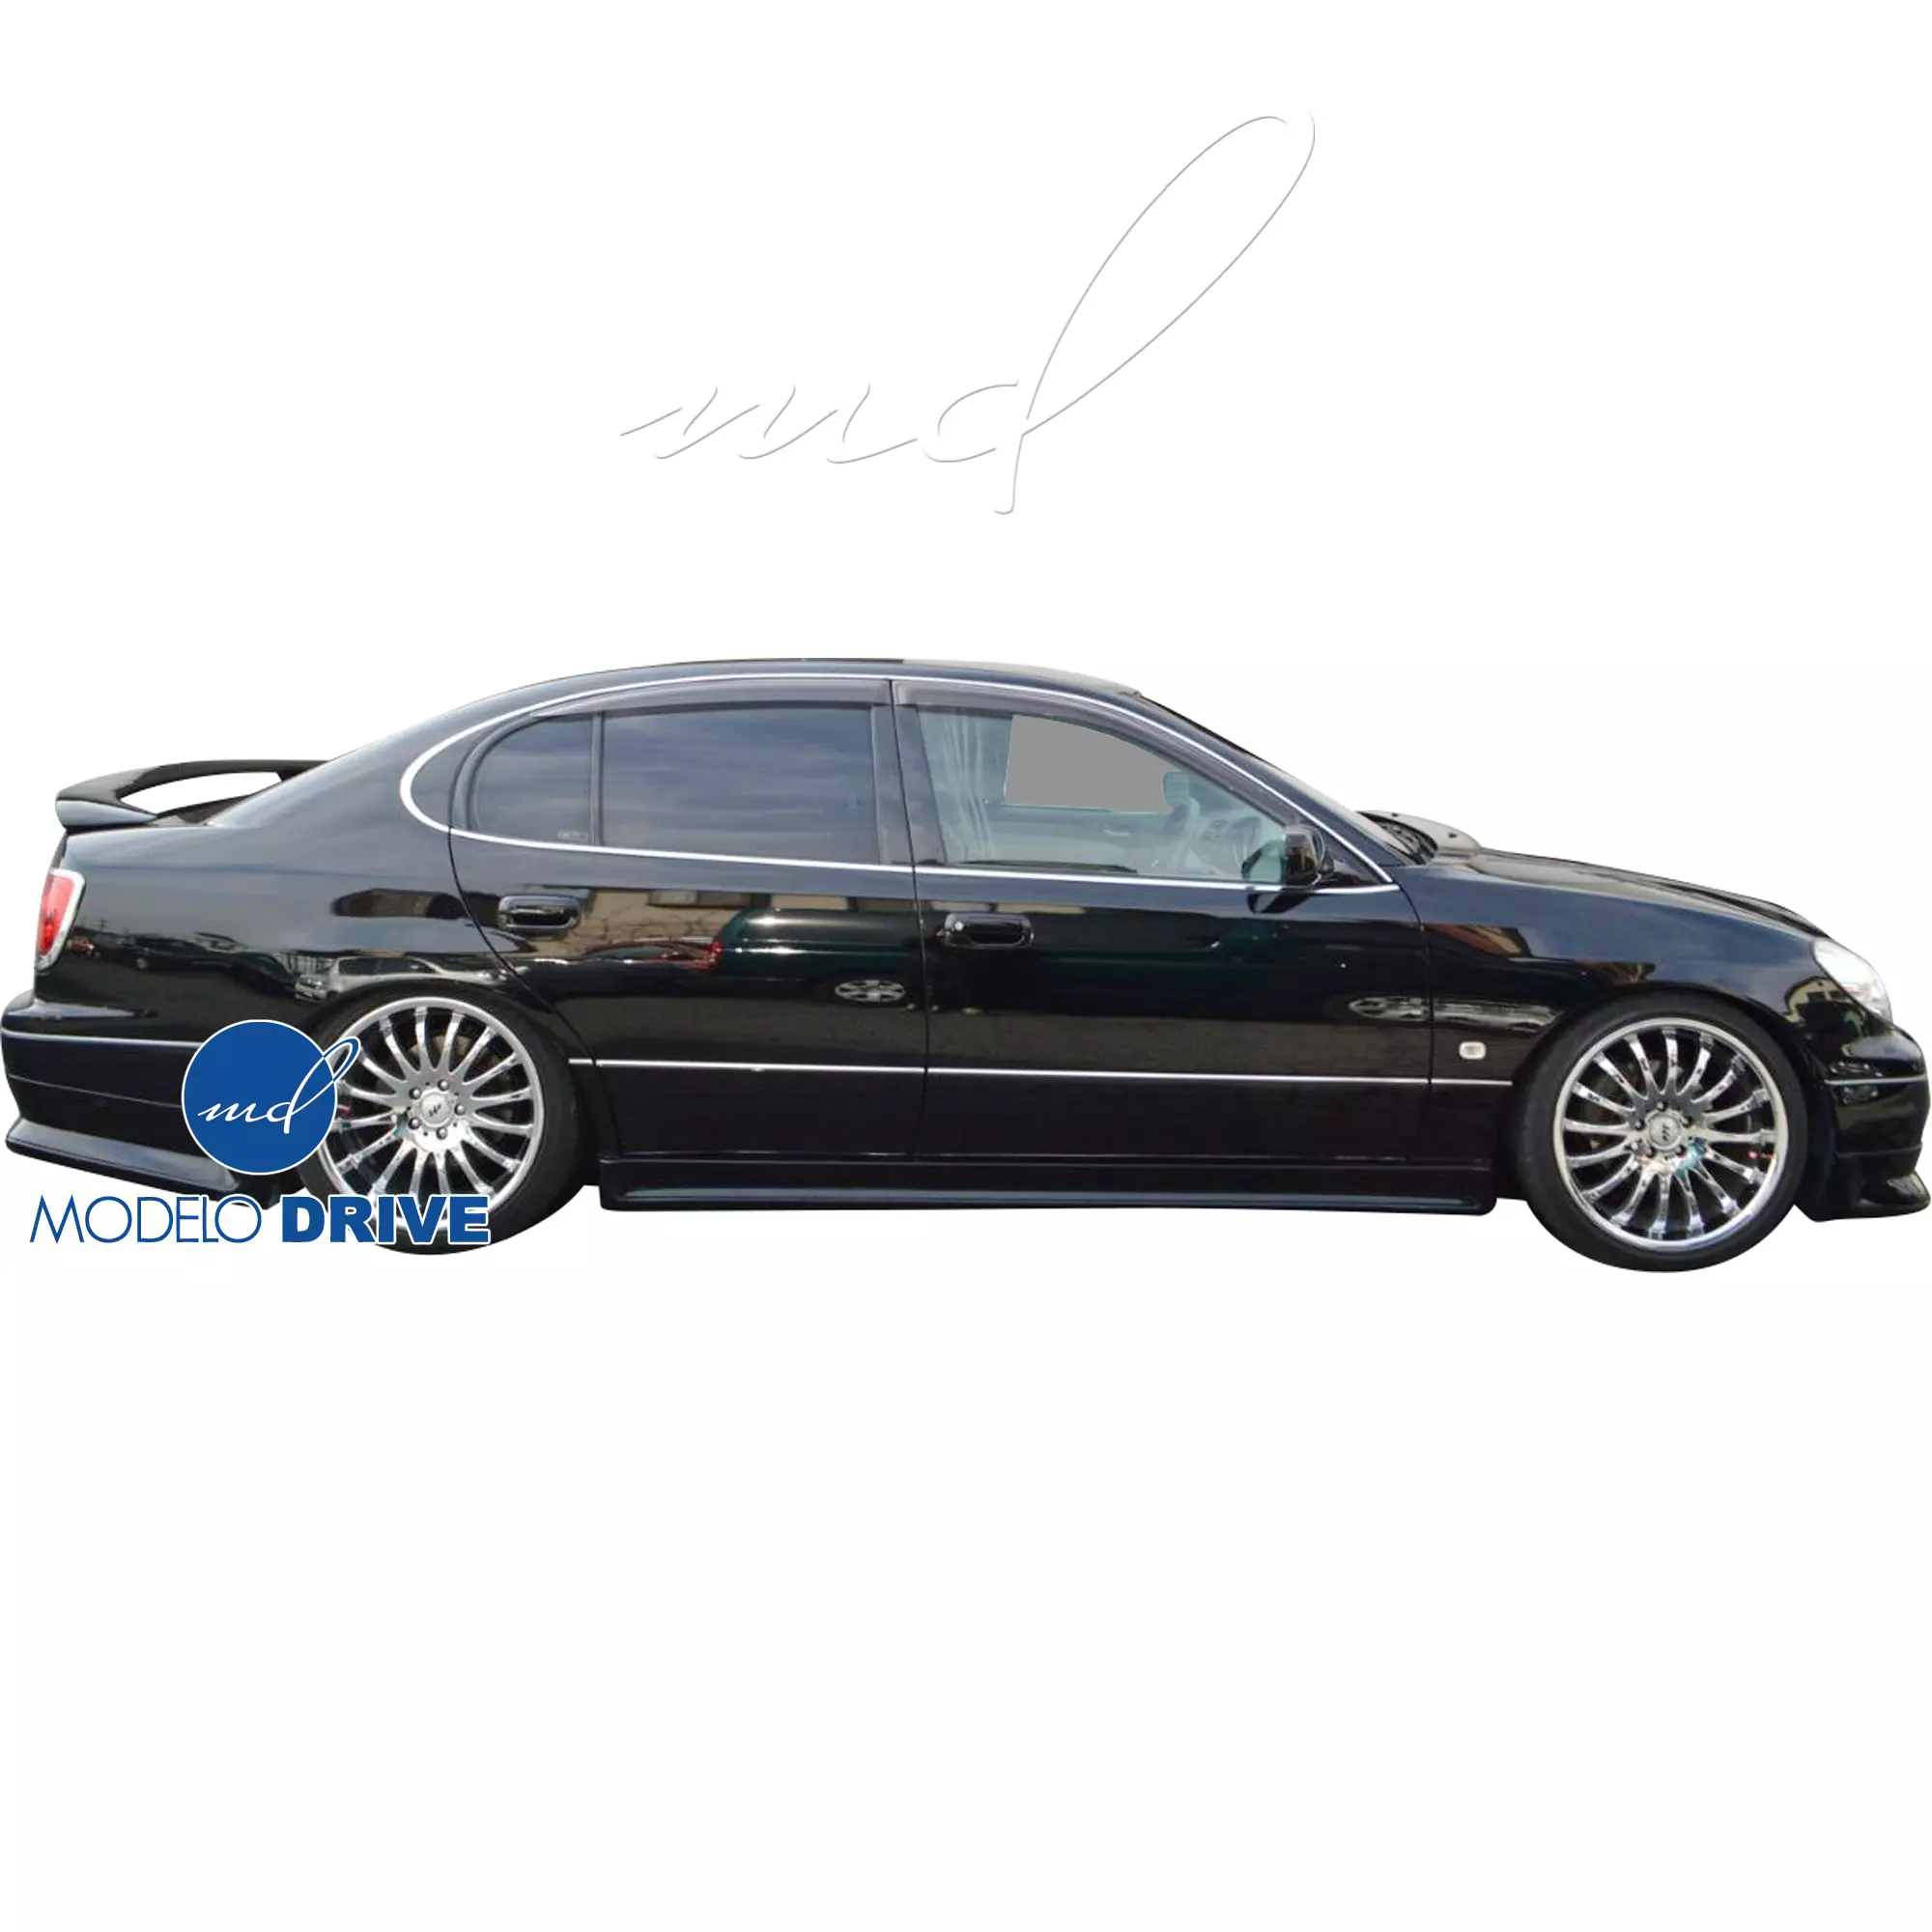 ModeloDrive FRP WAL SPOR Body Kit 4pc > Lexus GS Series GS400 GS300 1998-2005 - Image 32